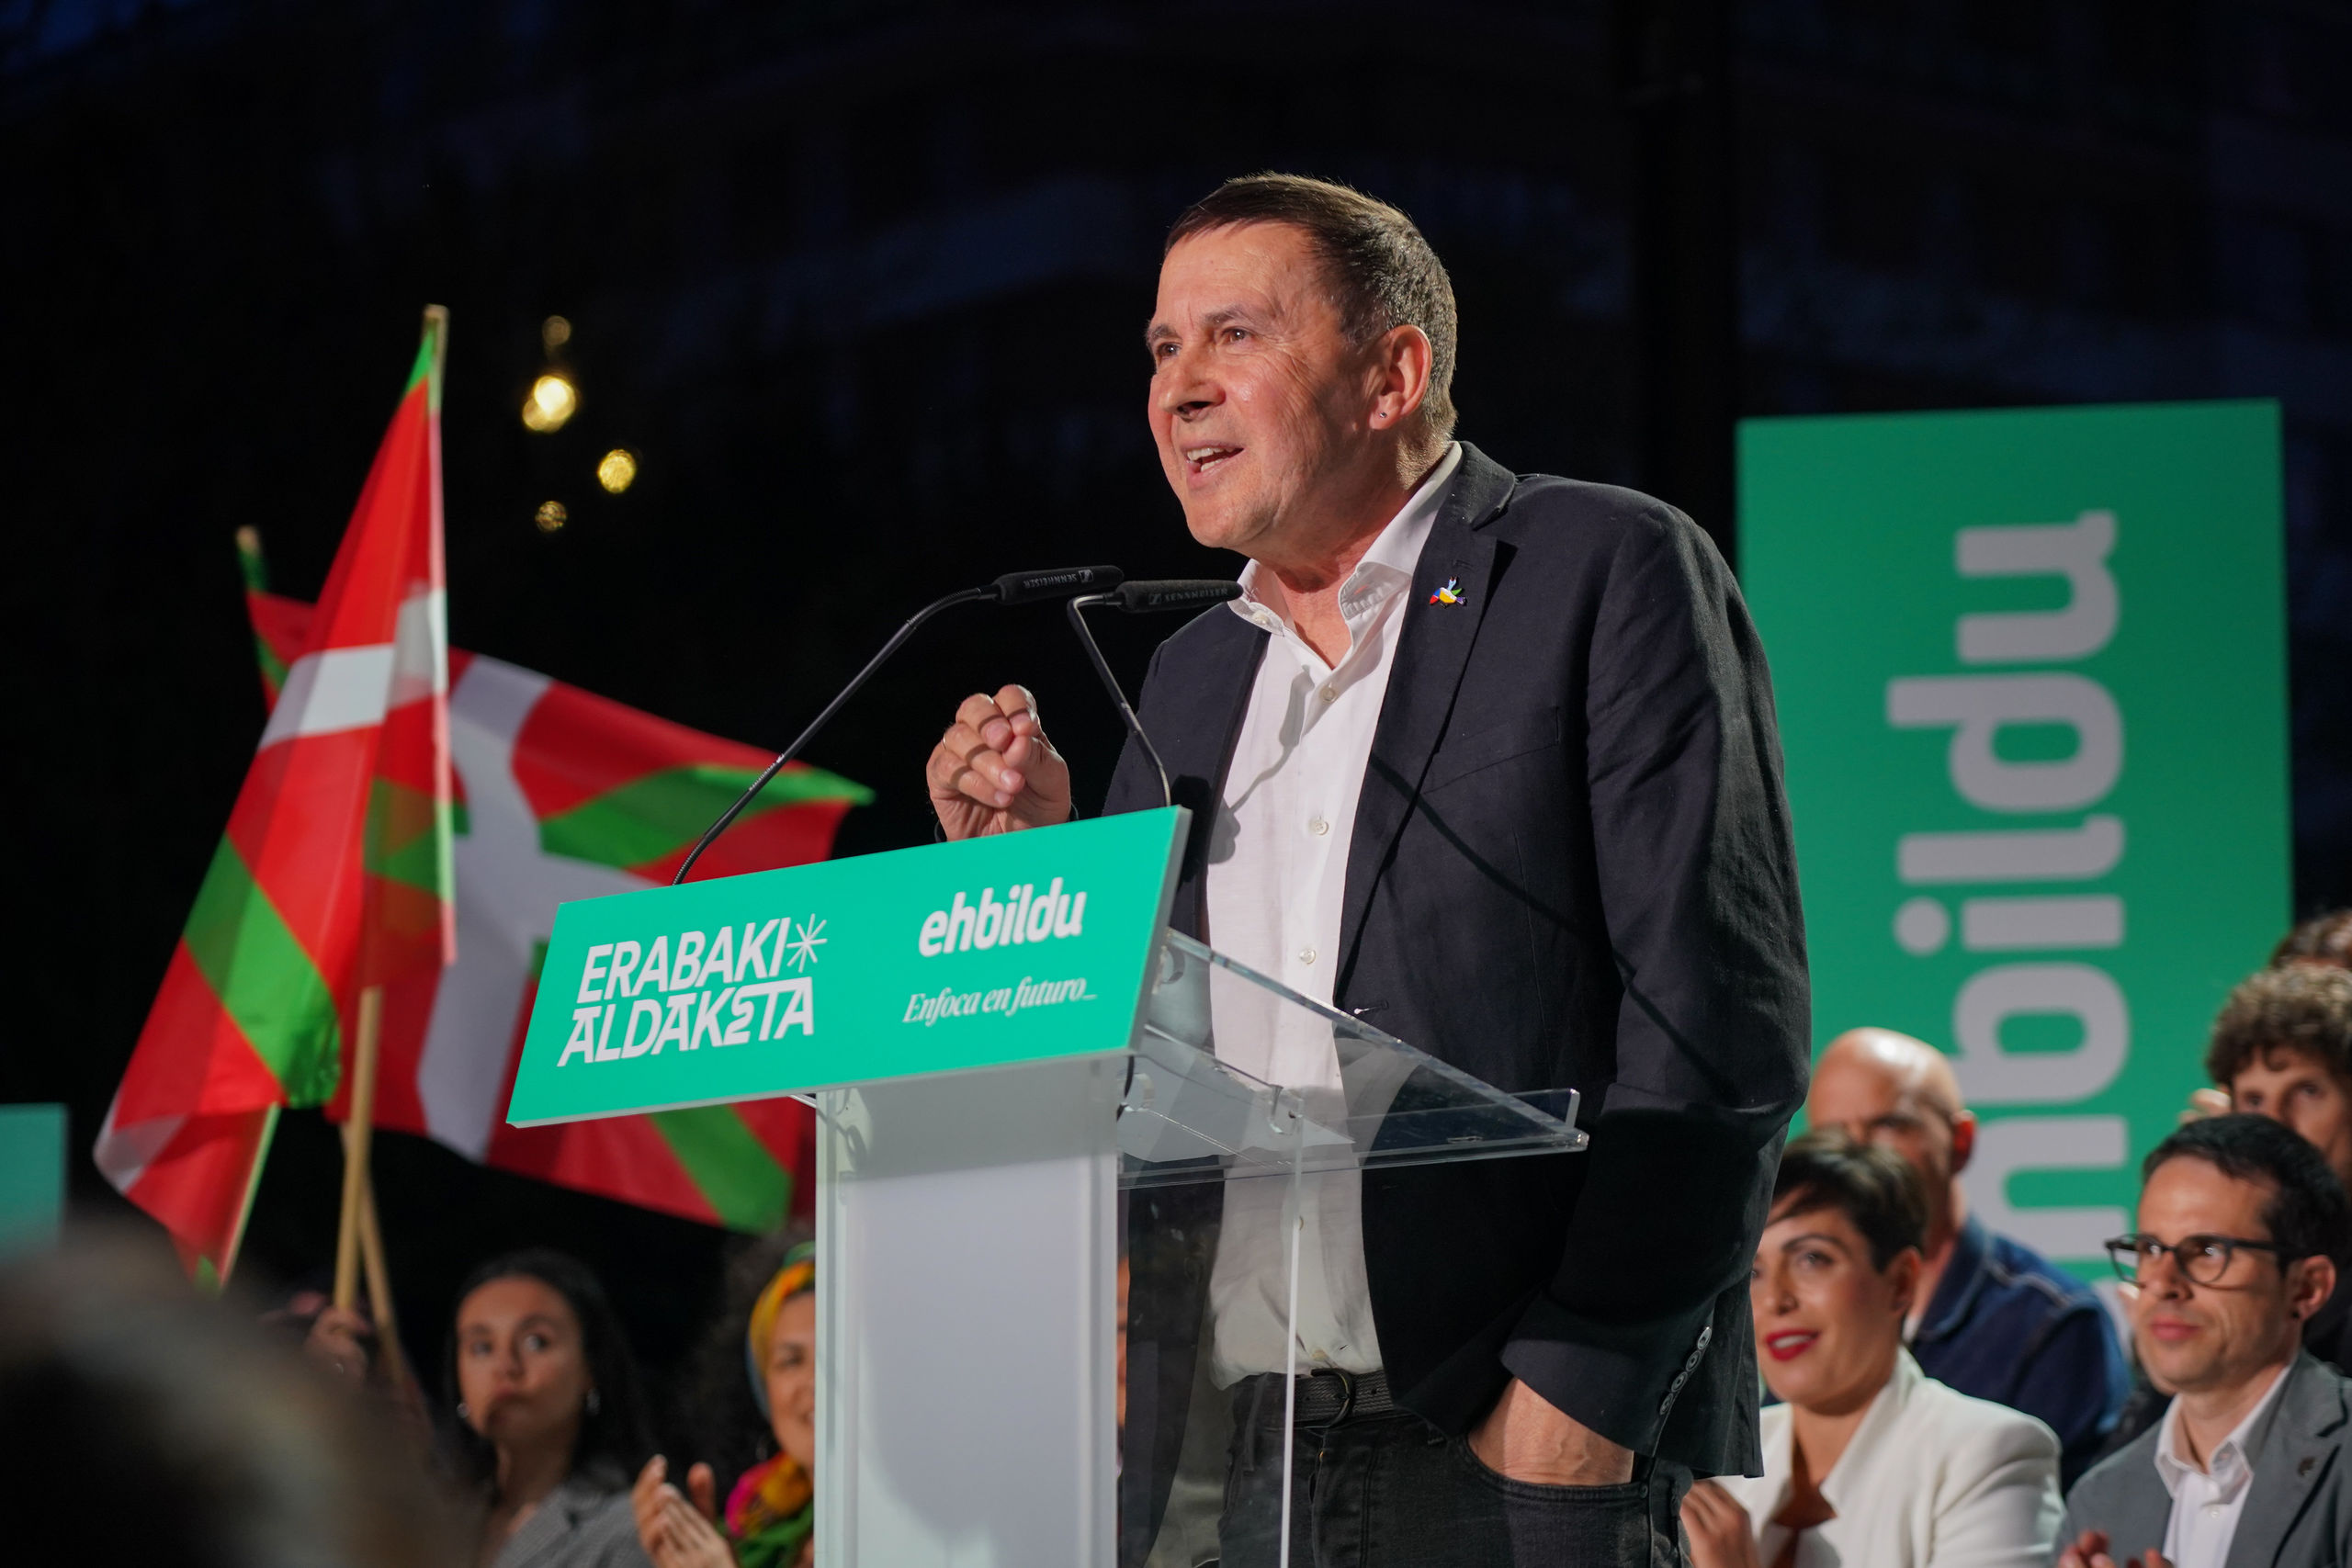 La formación proetarra Bildu ganaría las elecciones vascas pero por la mínima, según una encuesta